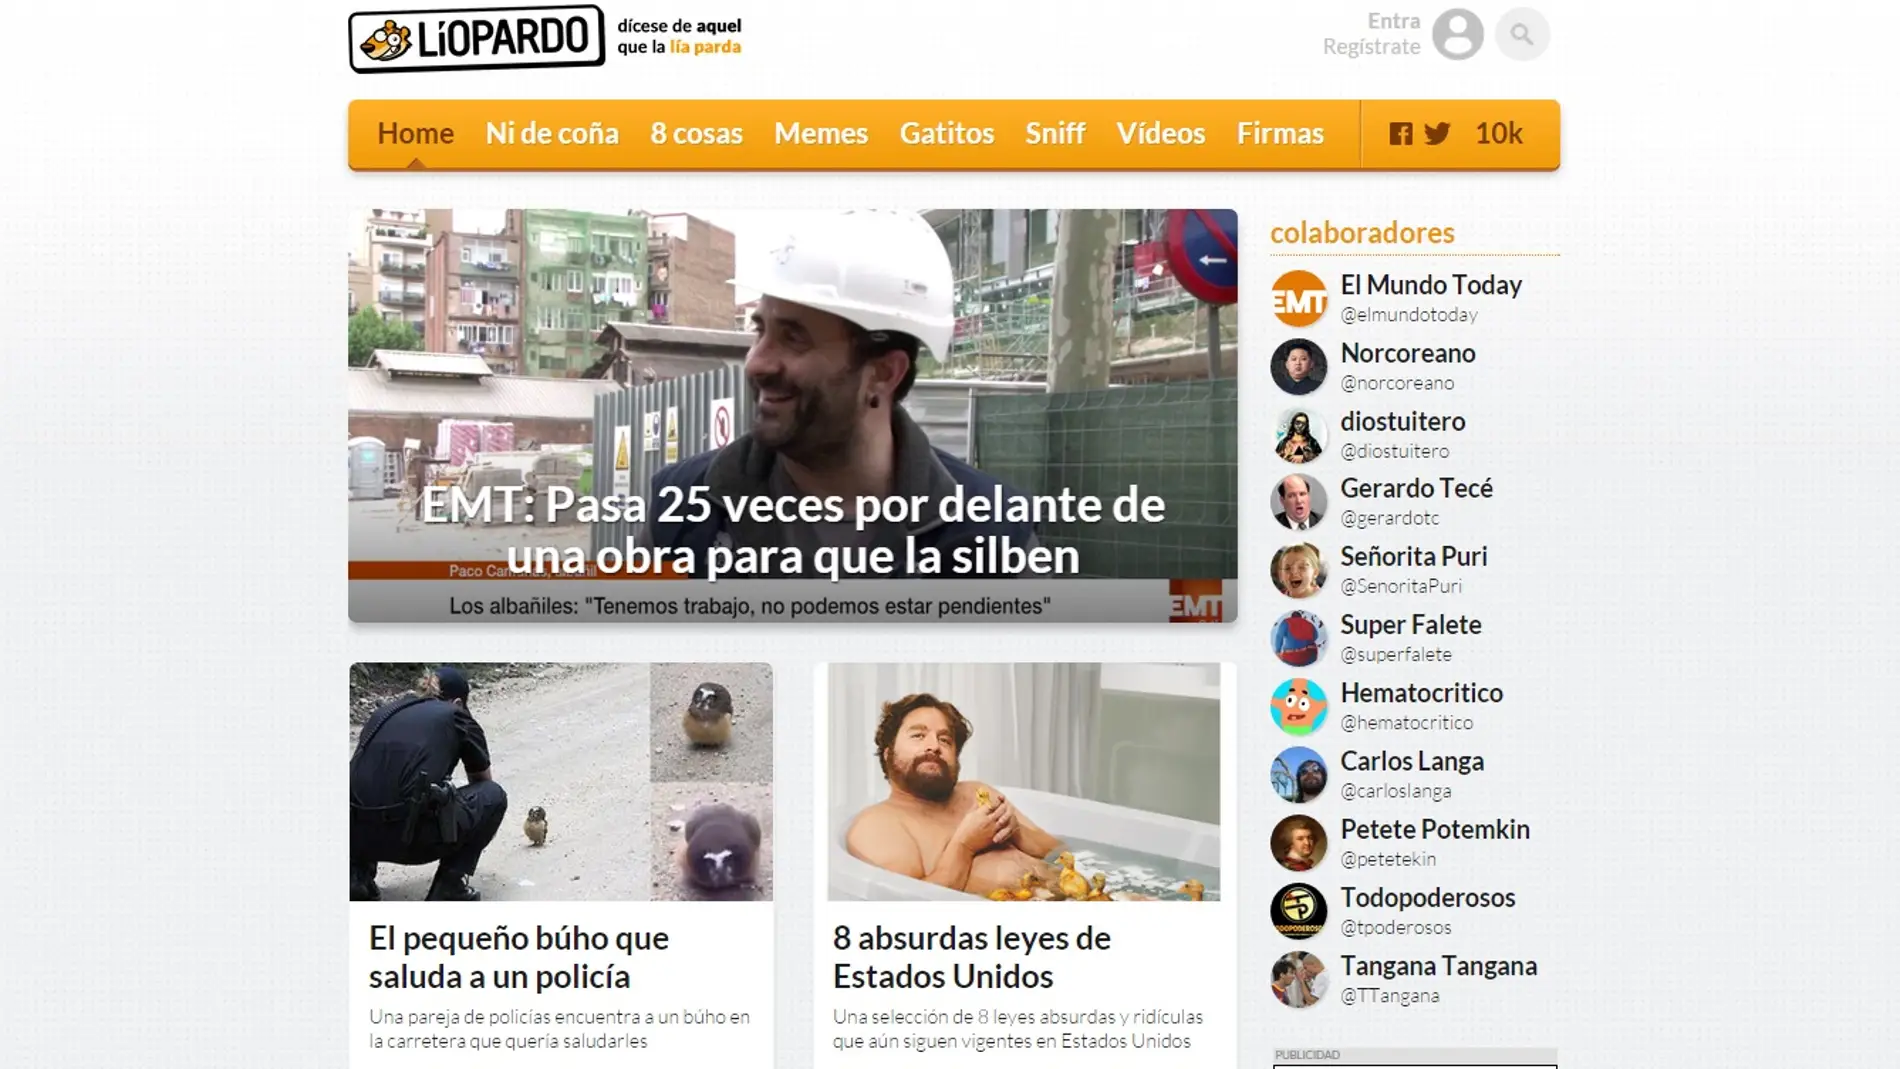 Liopardo se posiciona como número 1 en el ranking de webs de humor más vistas de España